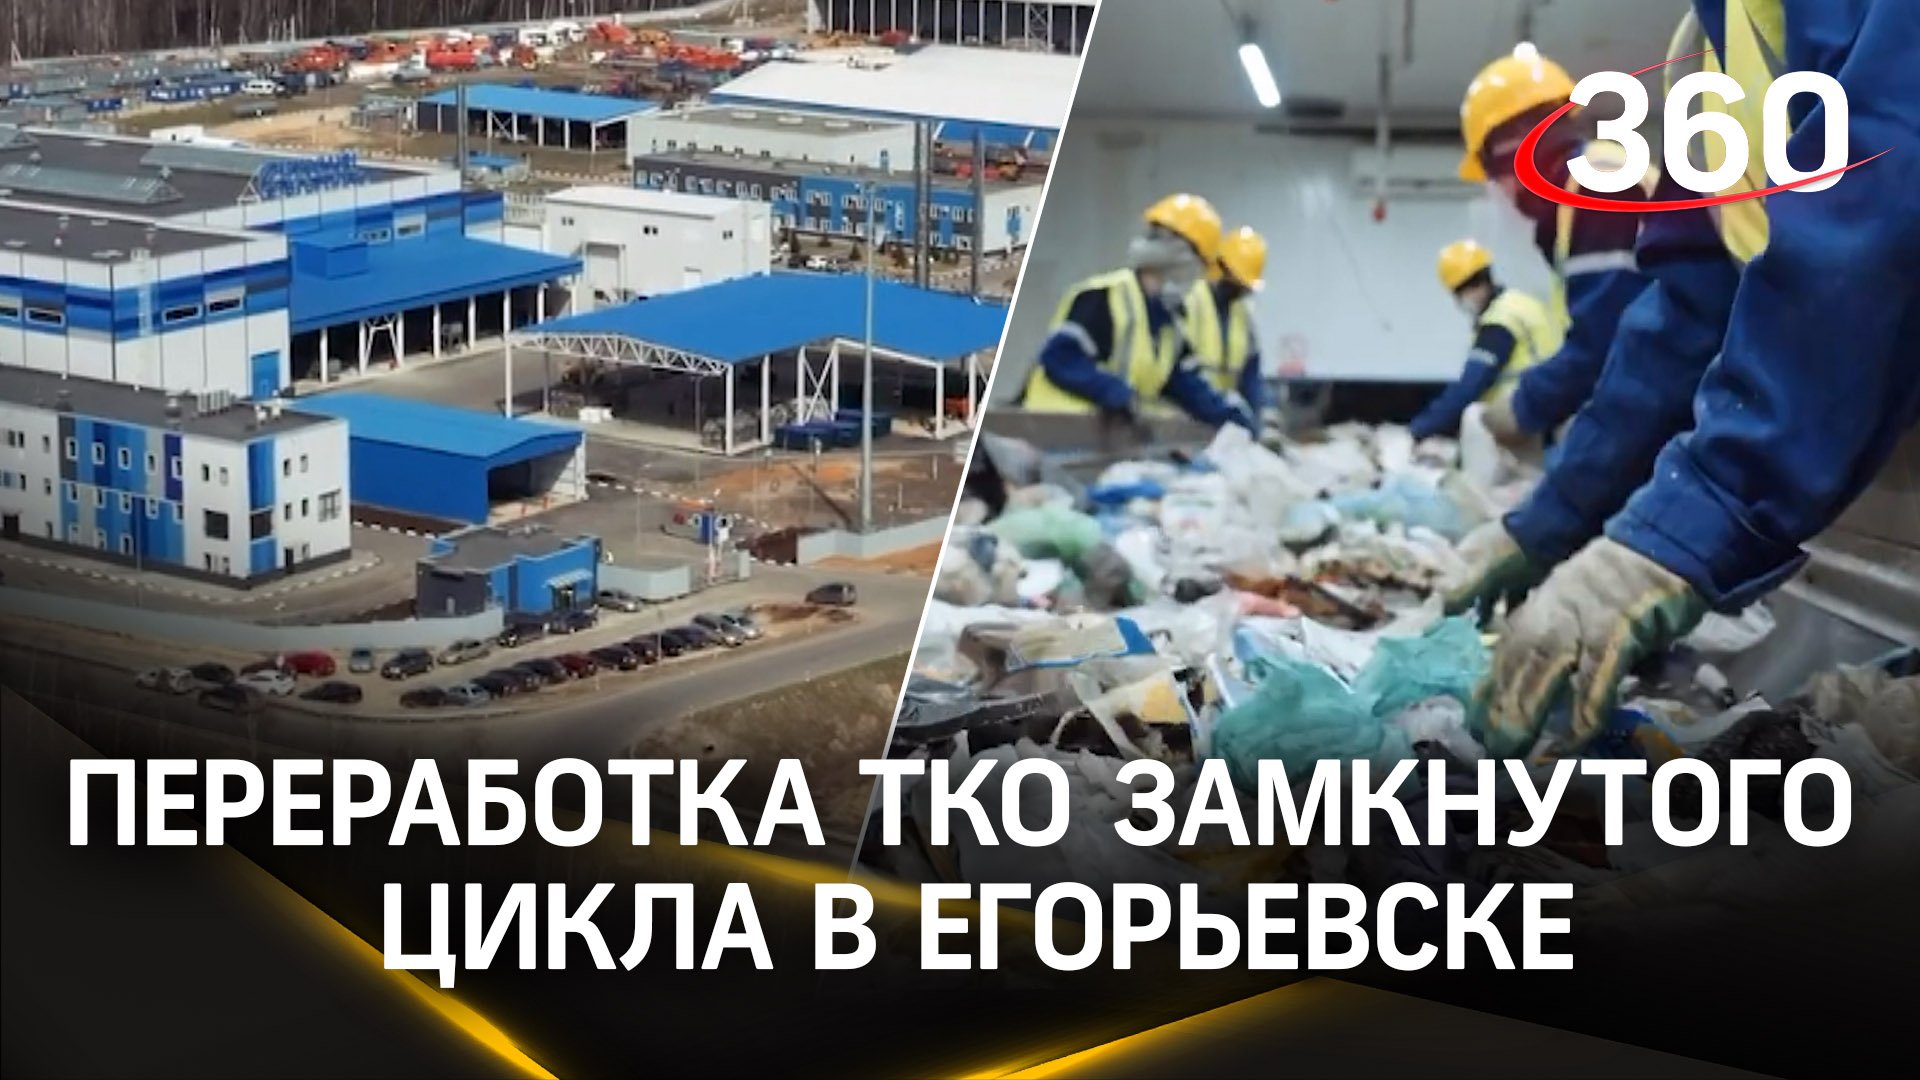 Первый в России комплекс по переработке ТКО замкнутого цикла запущен в Егорьевске